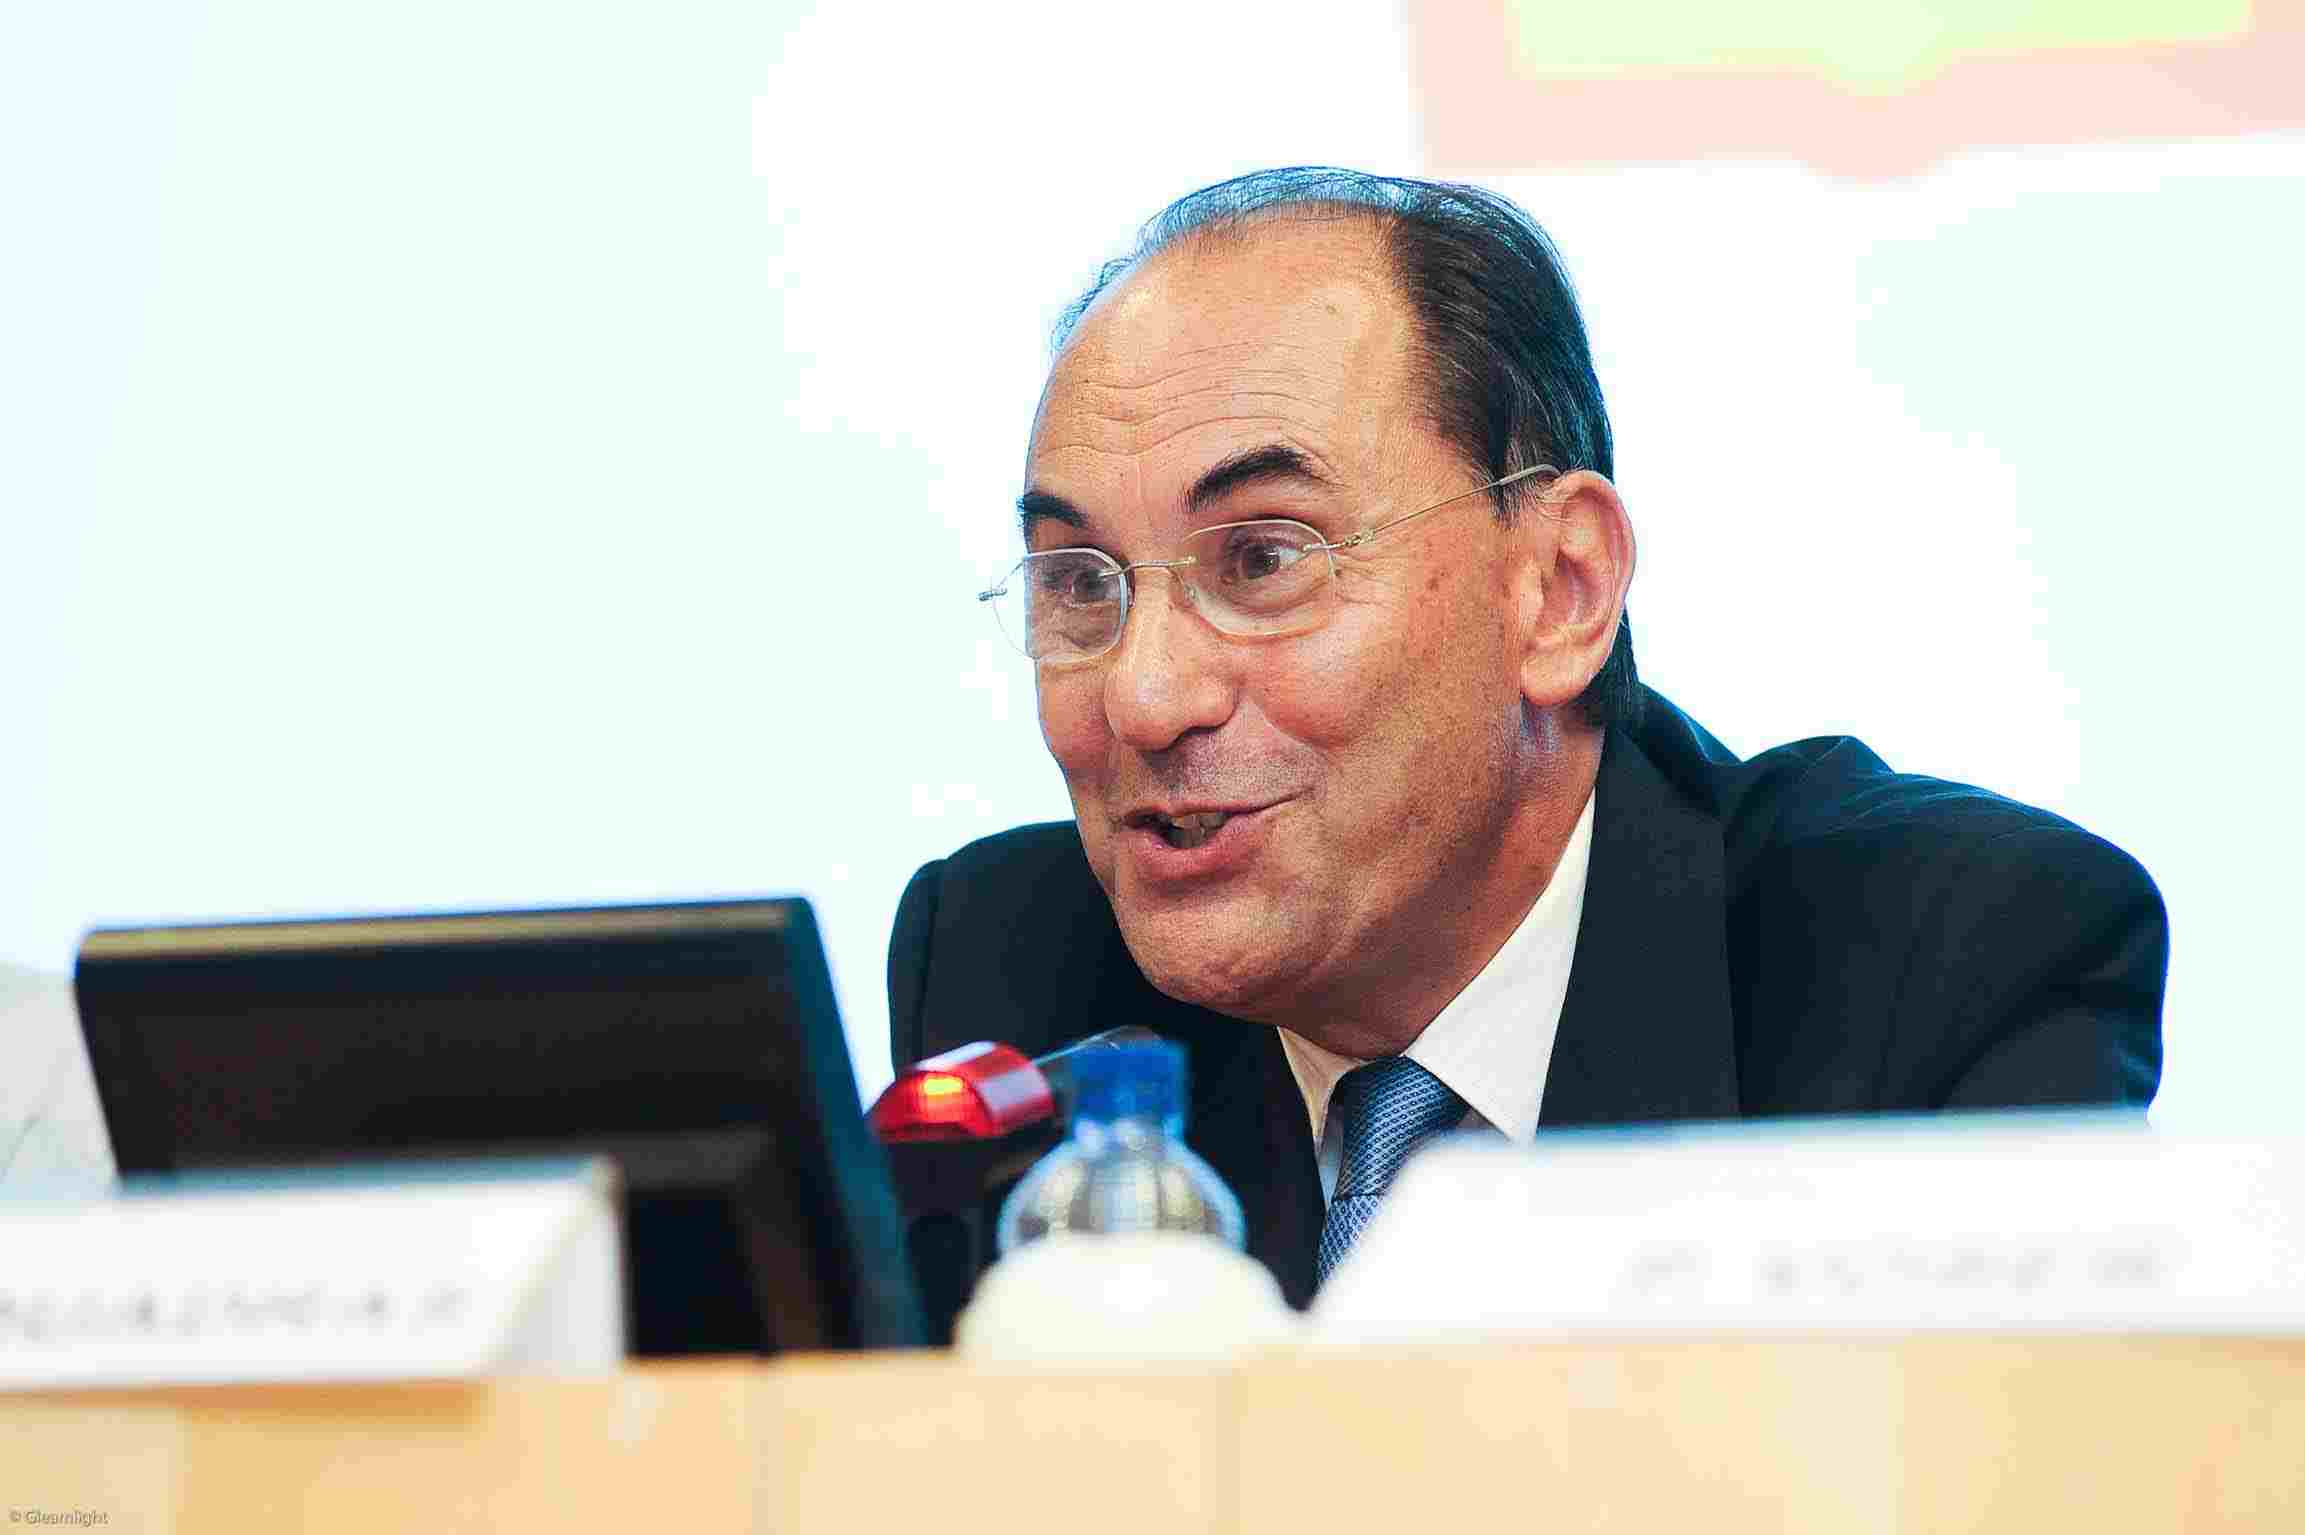 Conmoción en el mundo político por el disparo en la cara a Alejo Vidal-Quadras